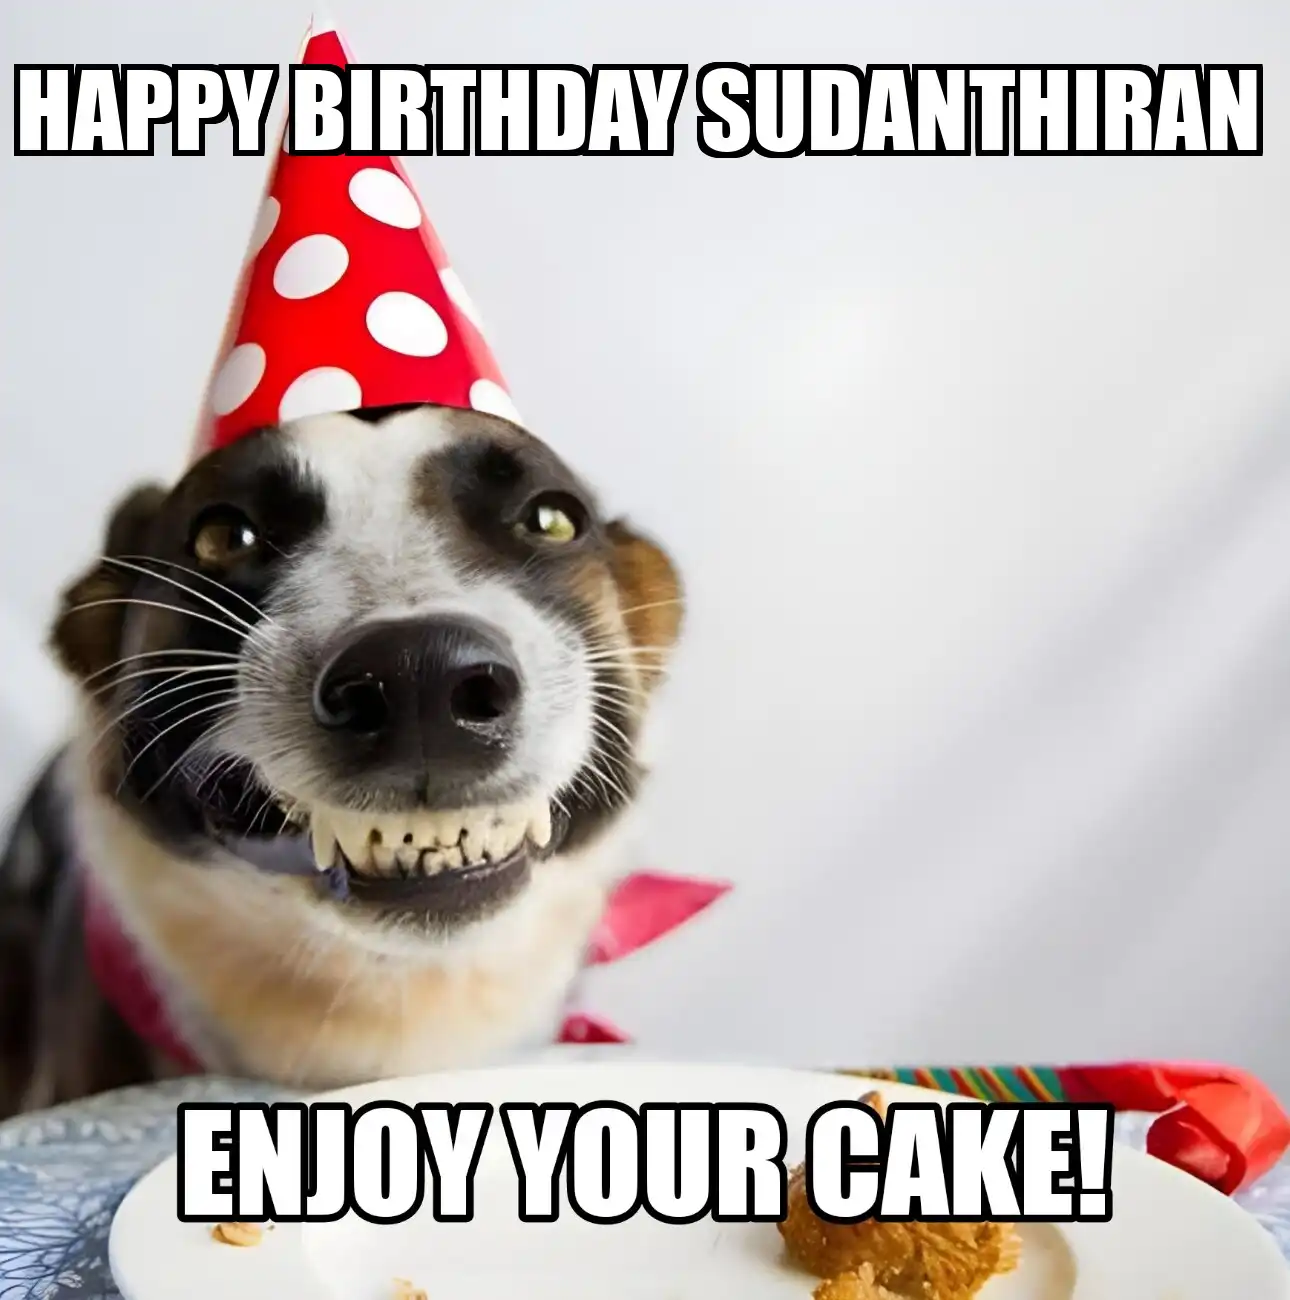 Happy Birthday Sudanthiran Enjoy Your Cake Dog Meme